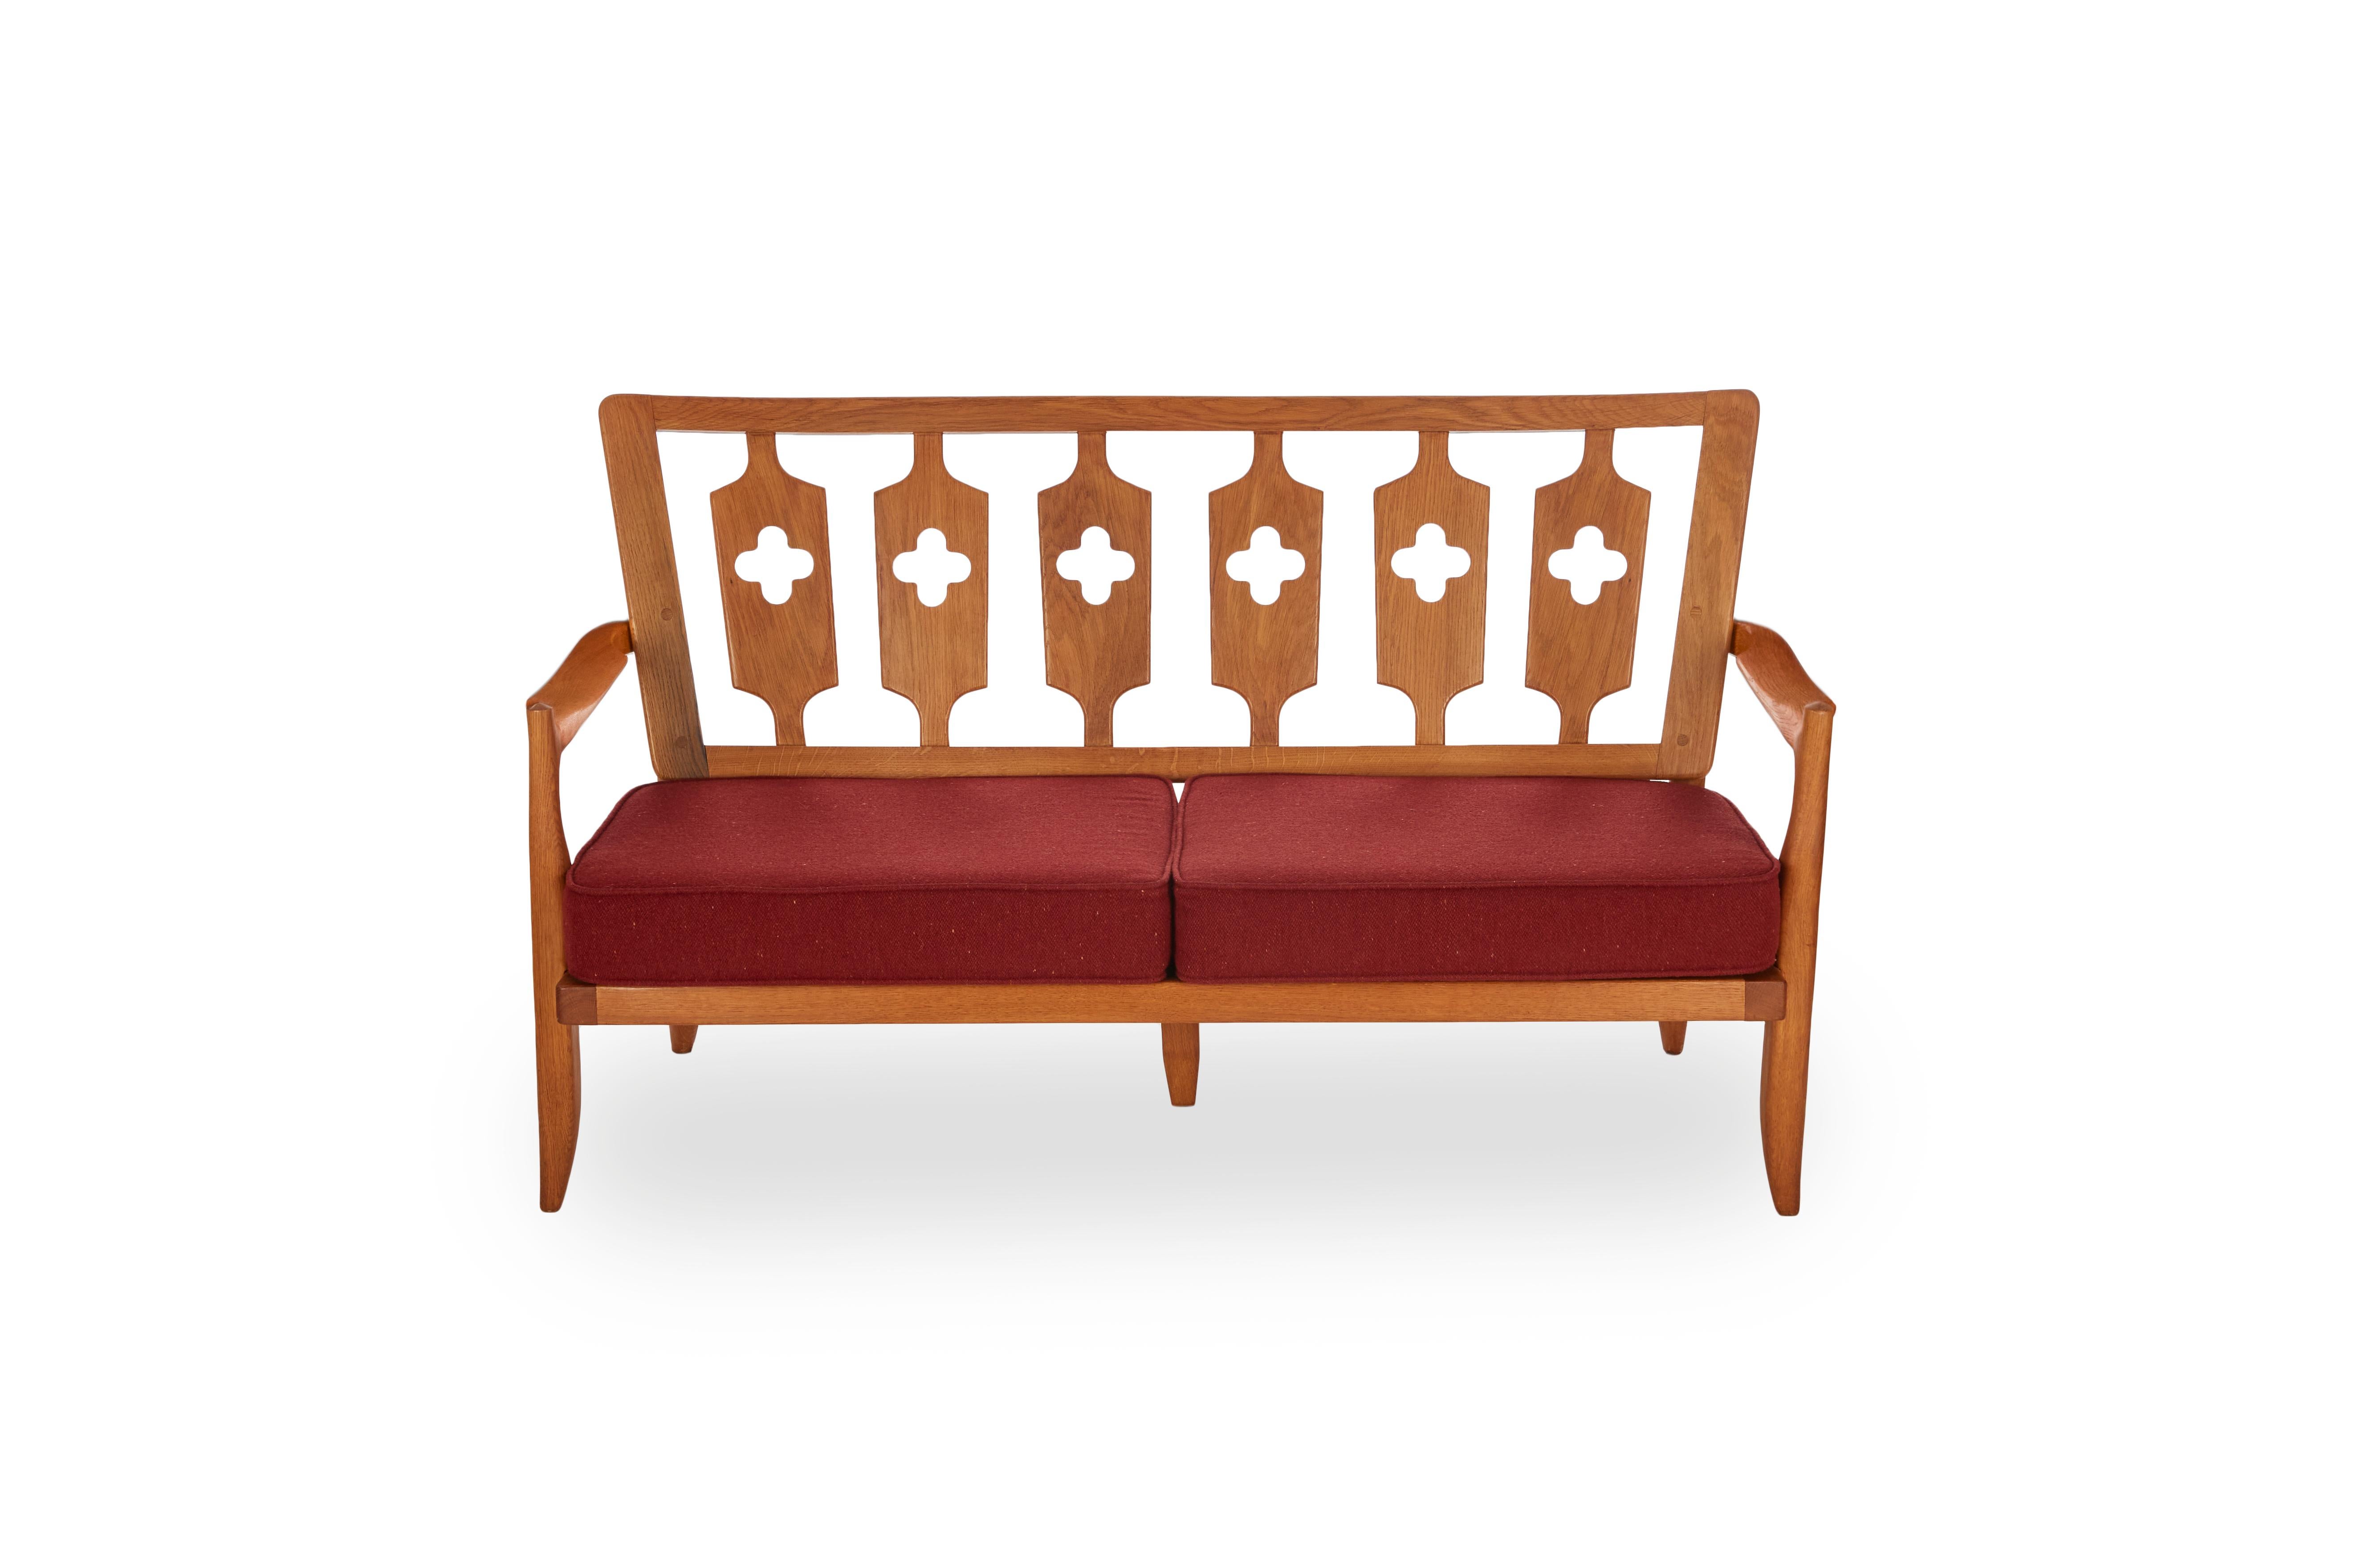 Cet élégant canapé en chêne poli du milieu du siècle dernier a été créé par le célèbre designer français Robert Guillerme dans le cadre d'une ligne de design qu'il a produite pour la société Votre Maison.

Guillerme a accordé une importance égale